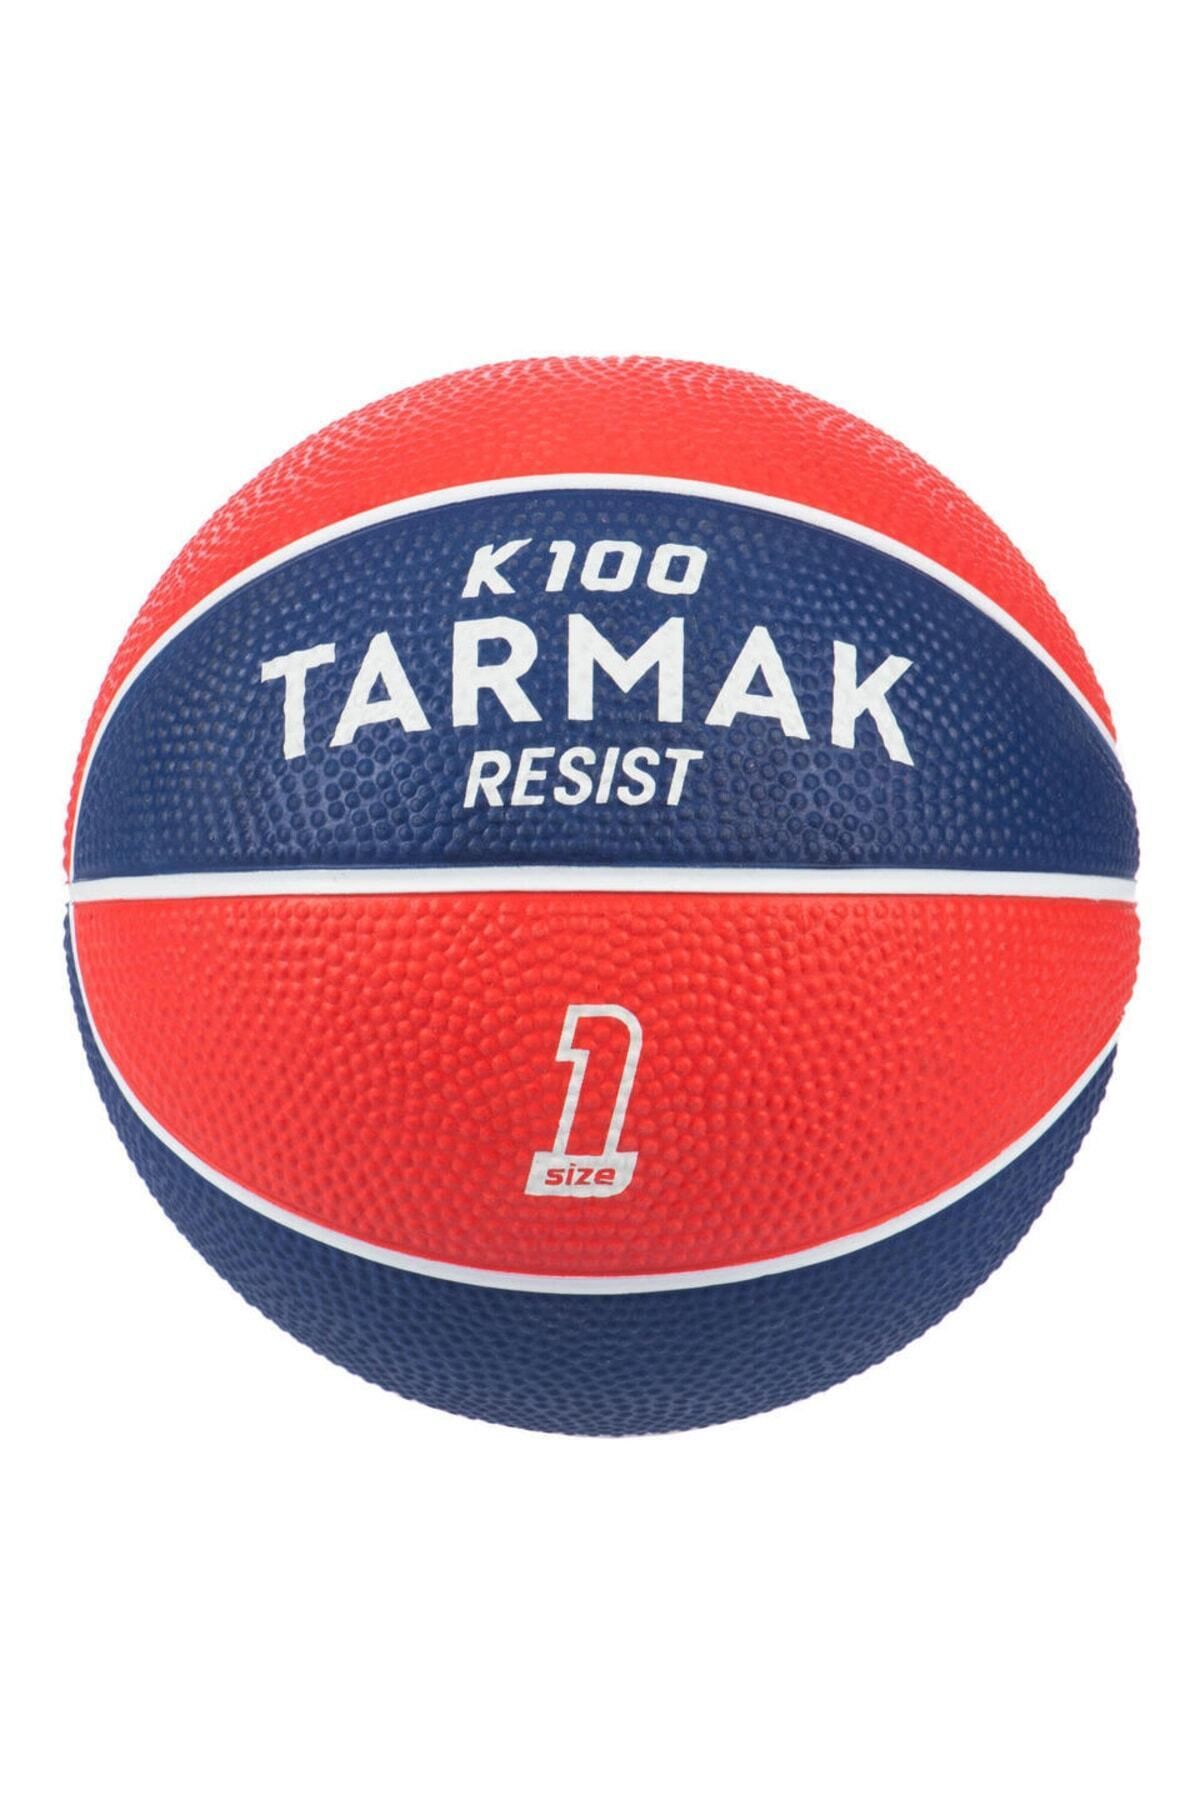 Decathlon Mini Basketbol Topu Iç Ve Dış Mekan Basketbol Topu K100 1 Numara Mavi Kırmızı